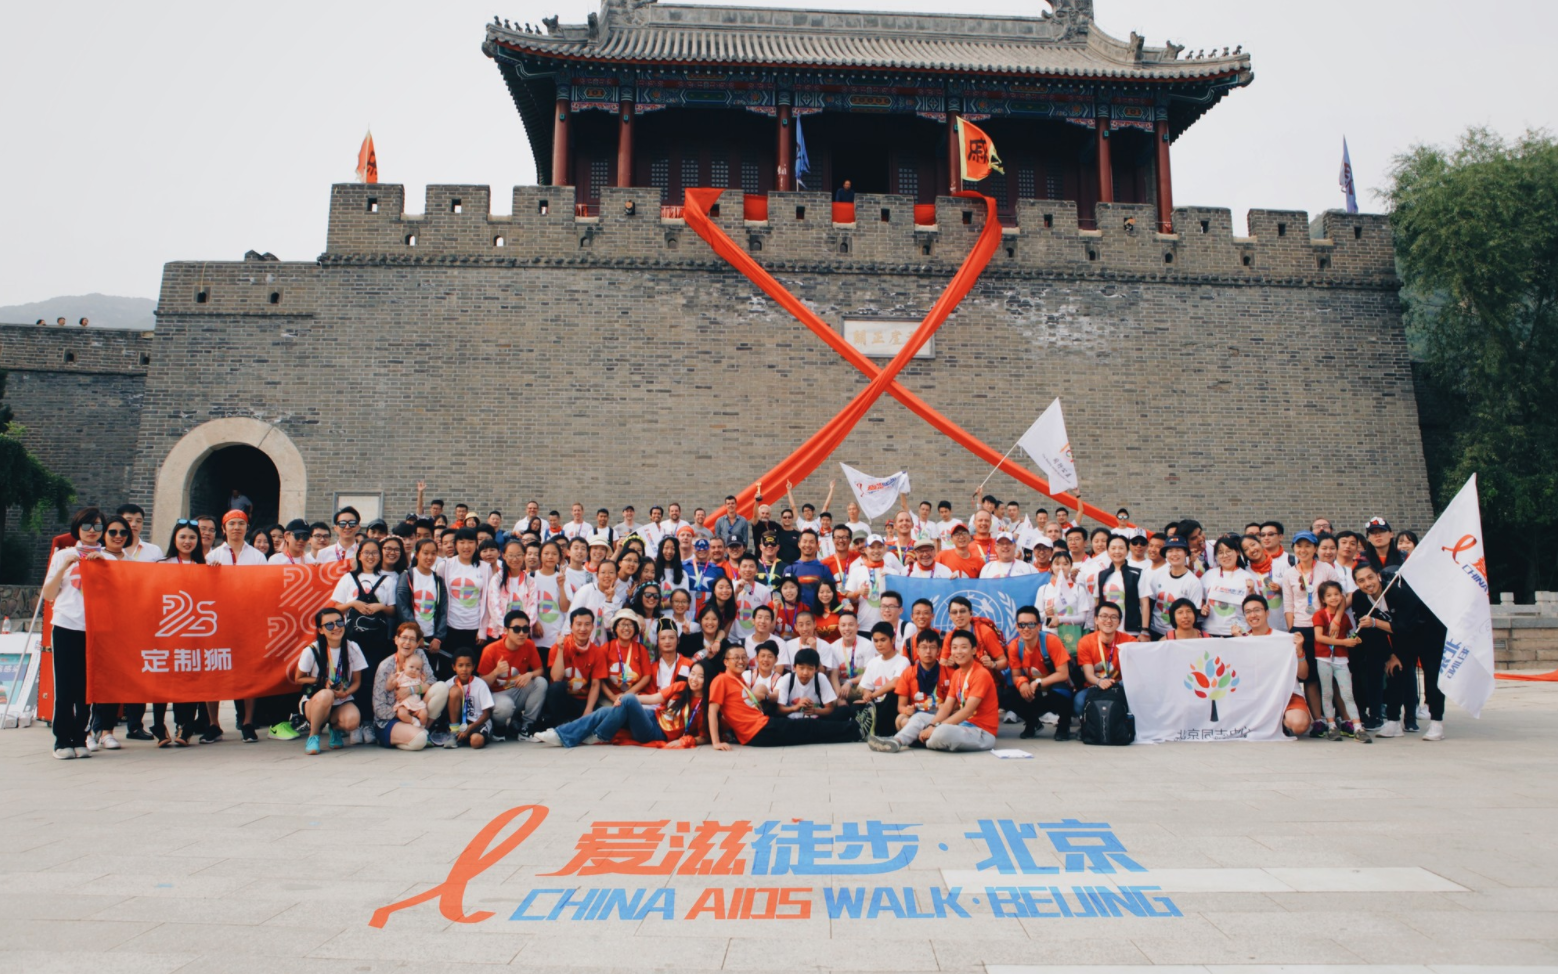 China AIDS Walk